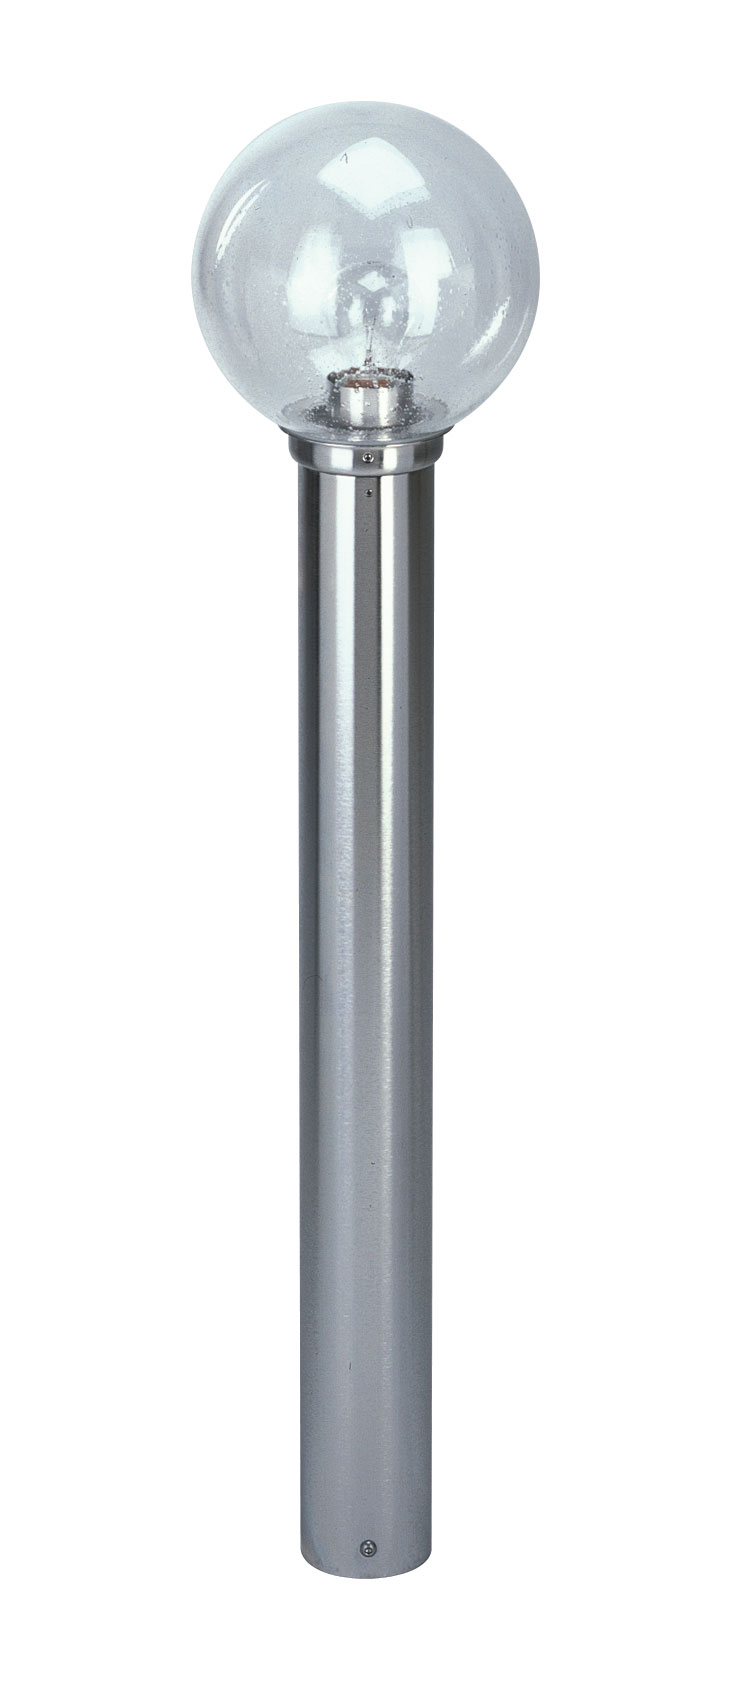 Albert LeuchtenPollerleuchte Typ Nr. 2261 - Edelstahl, für 1 x Lampe, E27